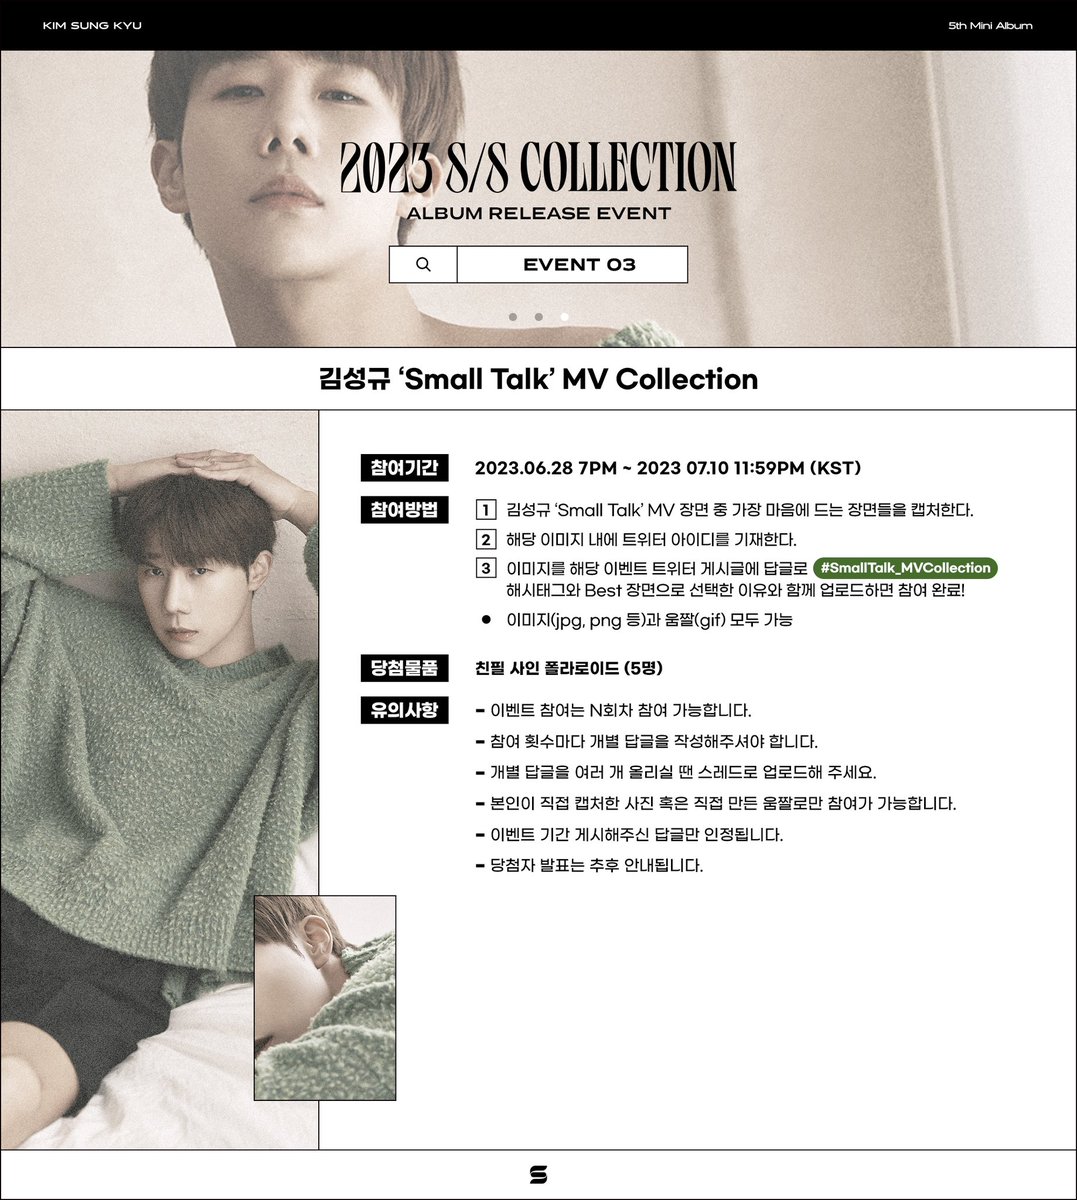 [📢] 김성규 (Kim Sung Kyu) 5th Mini Album [2023 S/S Collection] 발매 이벤트 안내 @ MV Collection ▫️ 2023.06.28 7PM ~ 2023.07.10 11:59PM (KST) 자세한 사항은 아래 이미지를 참고해 주세요. #KimSungKyu #김성규 #2023_SS_Collection #Small_Talk #SmallTalk_MVCollection